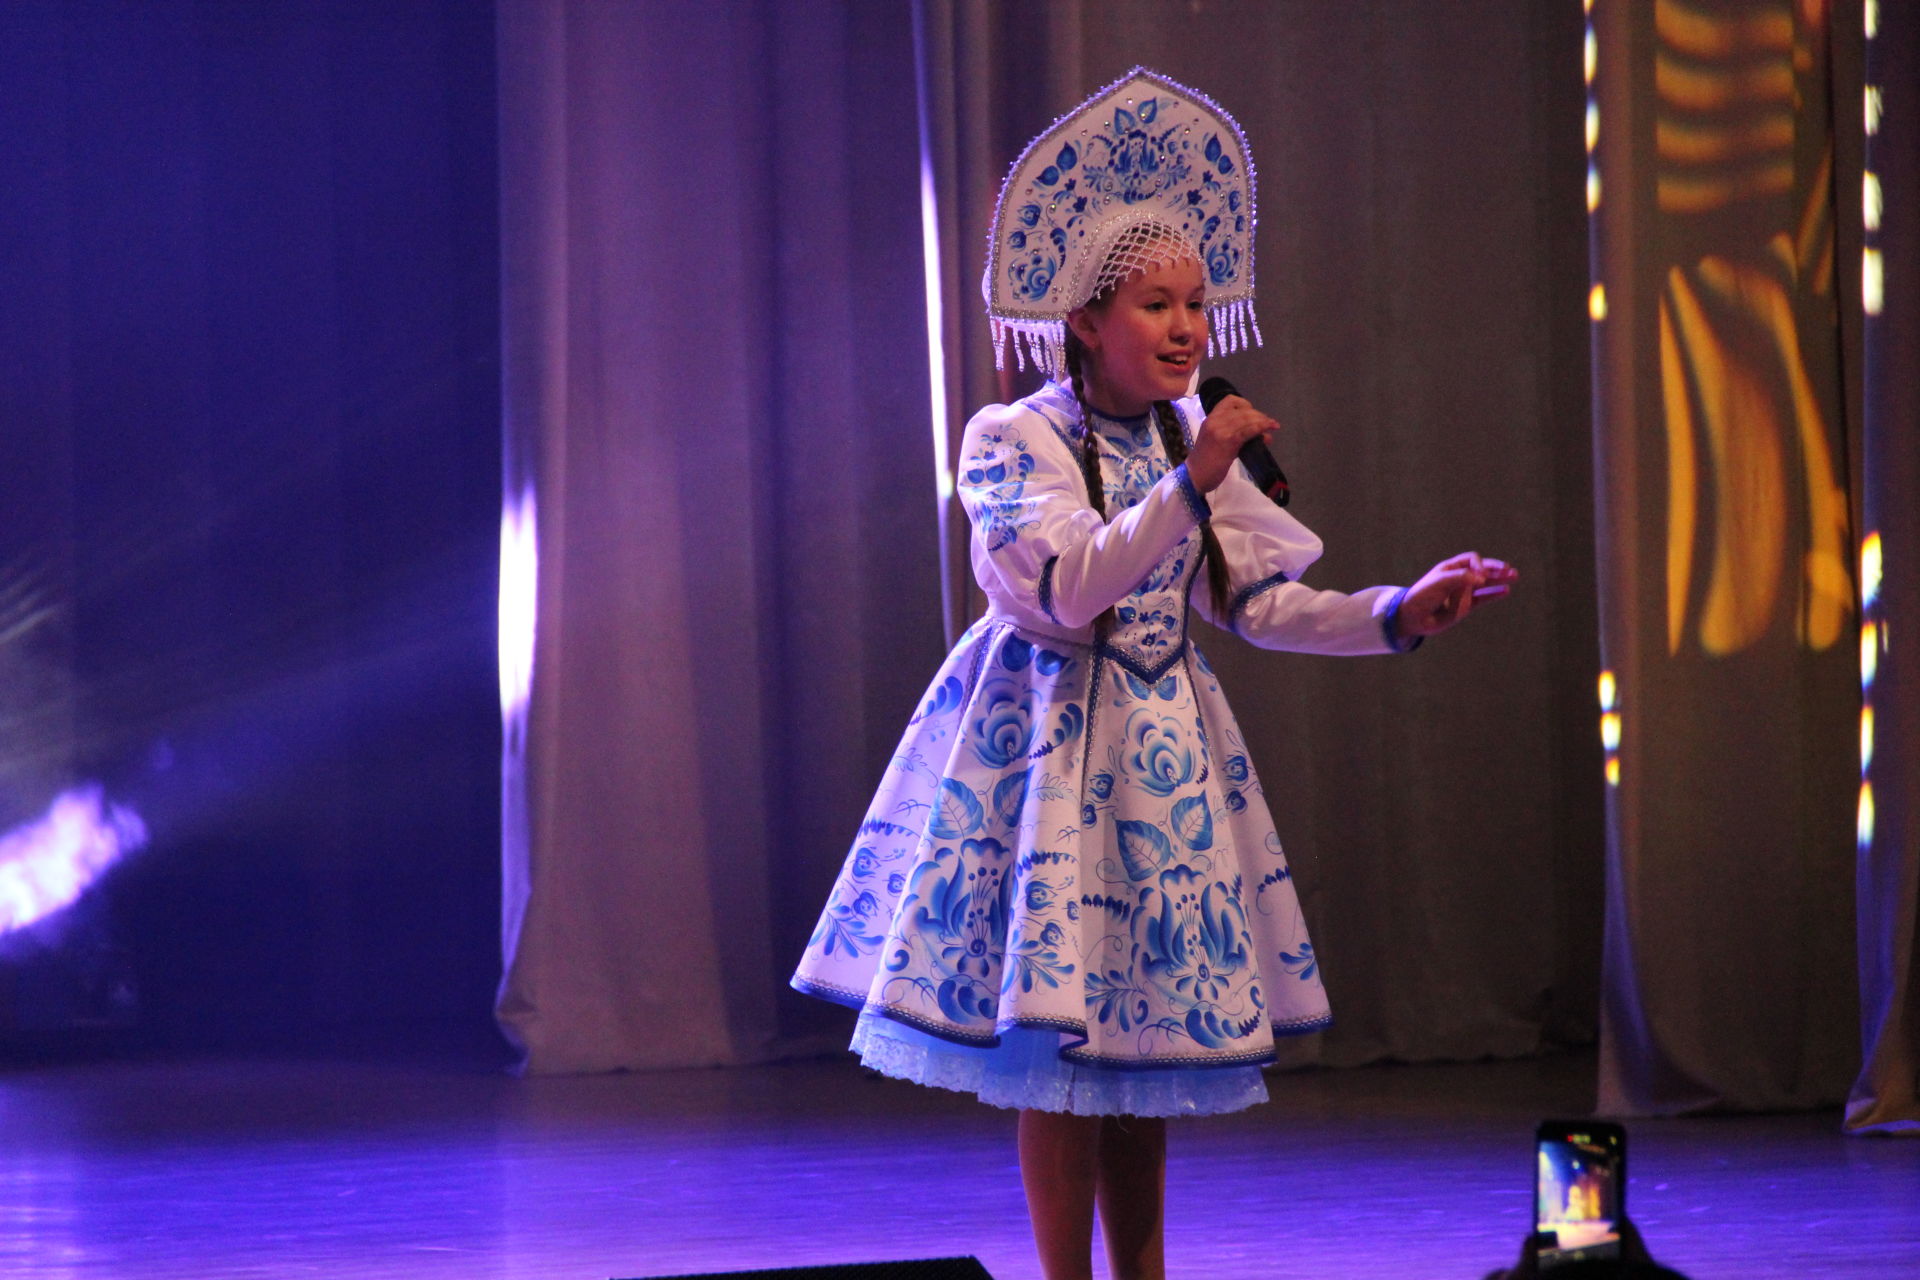 Красочным концертом в Заинске открыли юбилейный для города год